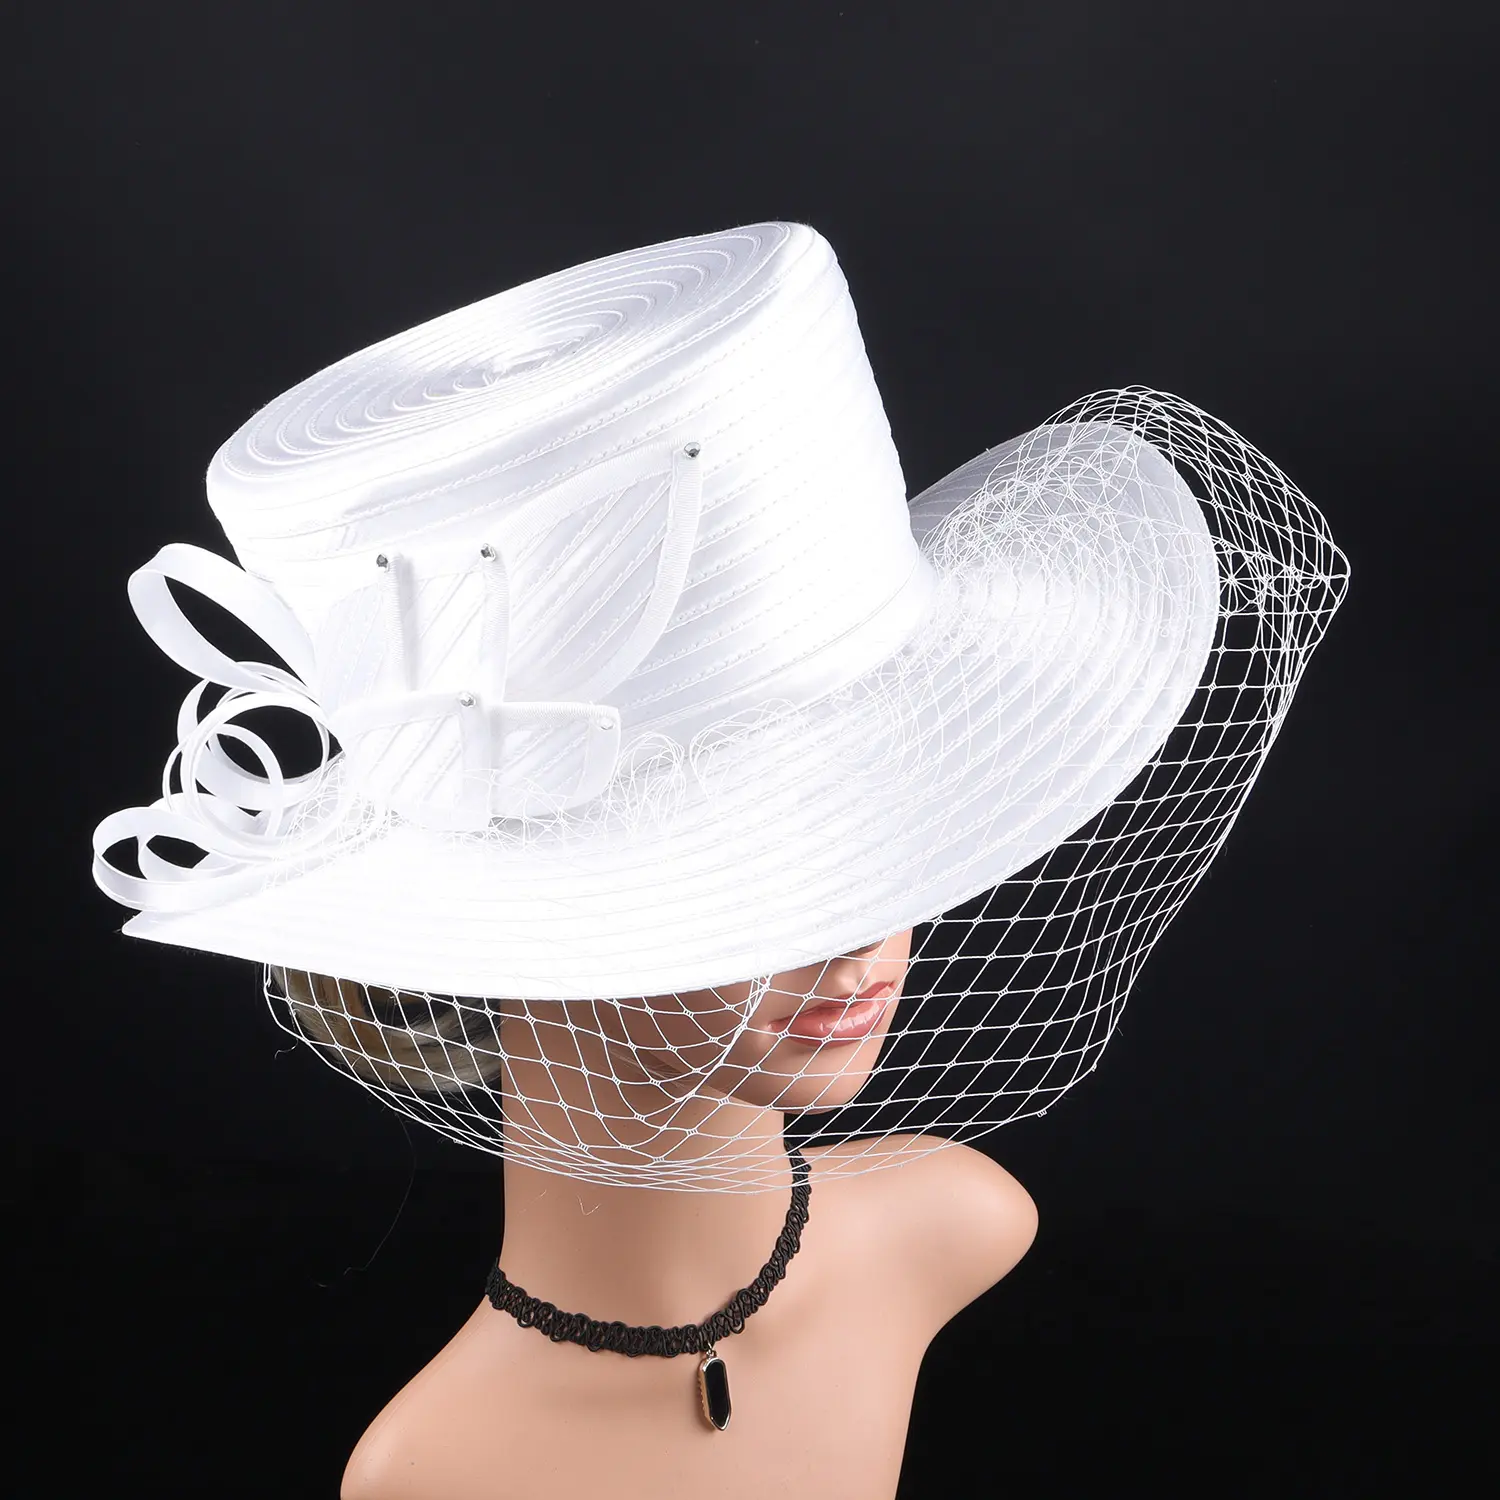 Deluxe White Church Hüte Party Fascinator Kentucky Derby Hüte Bankett Satin Stoff Sonnen hüte Haarschmuck für Frauen